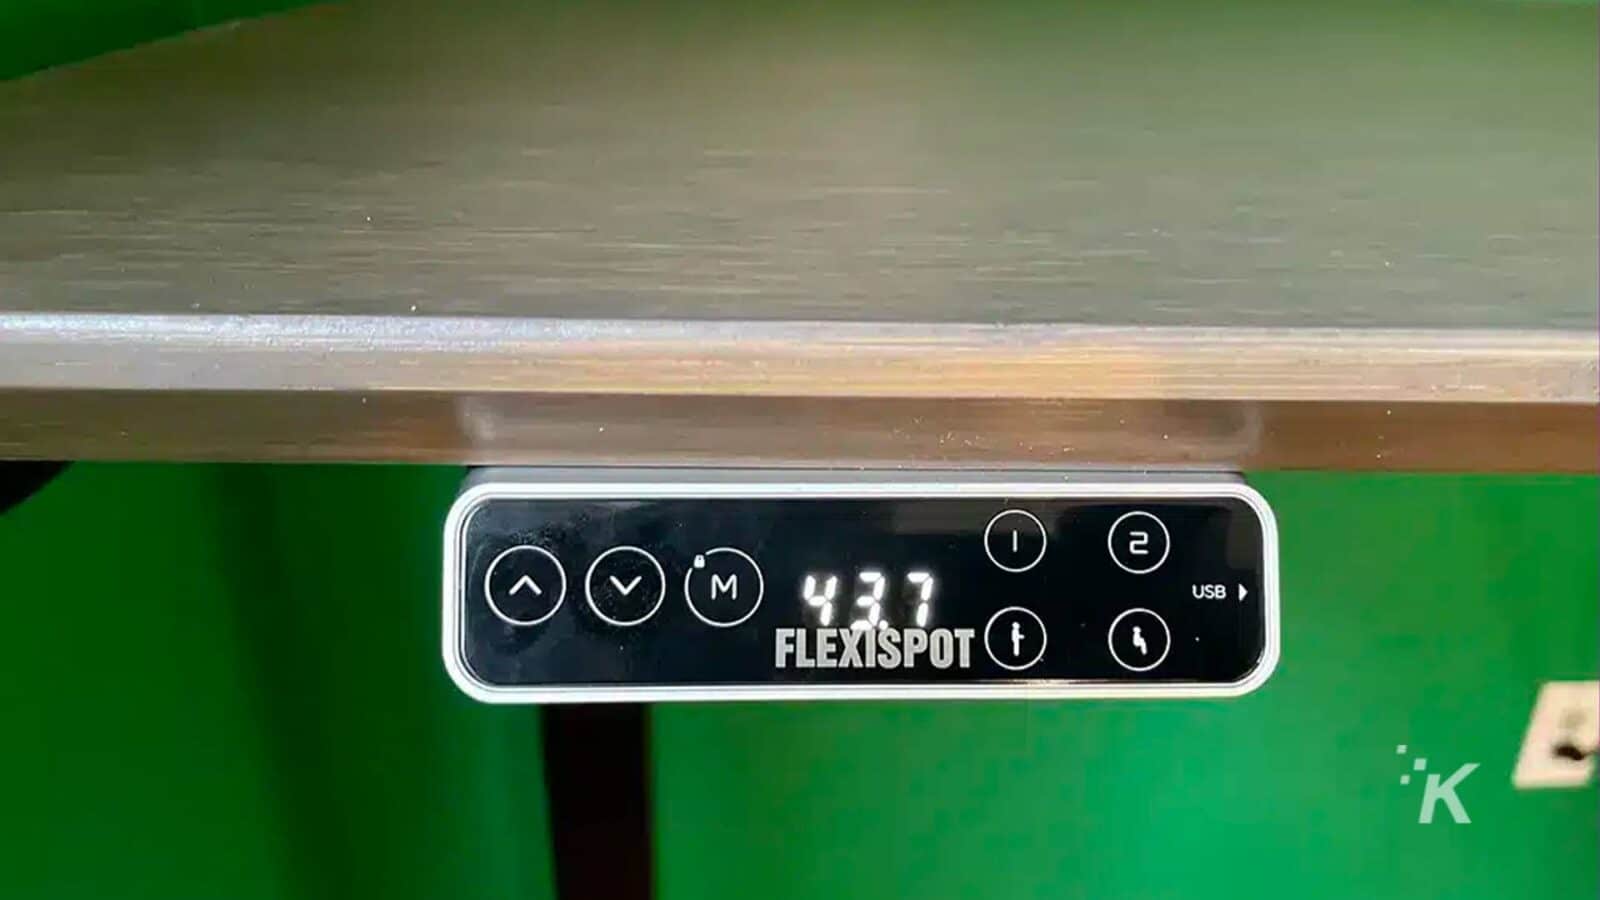 Imaginea arată un cablu USB conectat la un dispozitiv FlexiSpot. Text complet: - VM) 437 2 1 USB od FLEXISPOT K